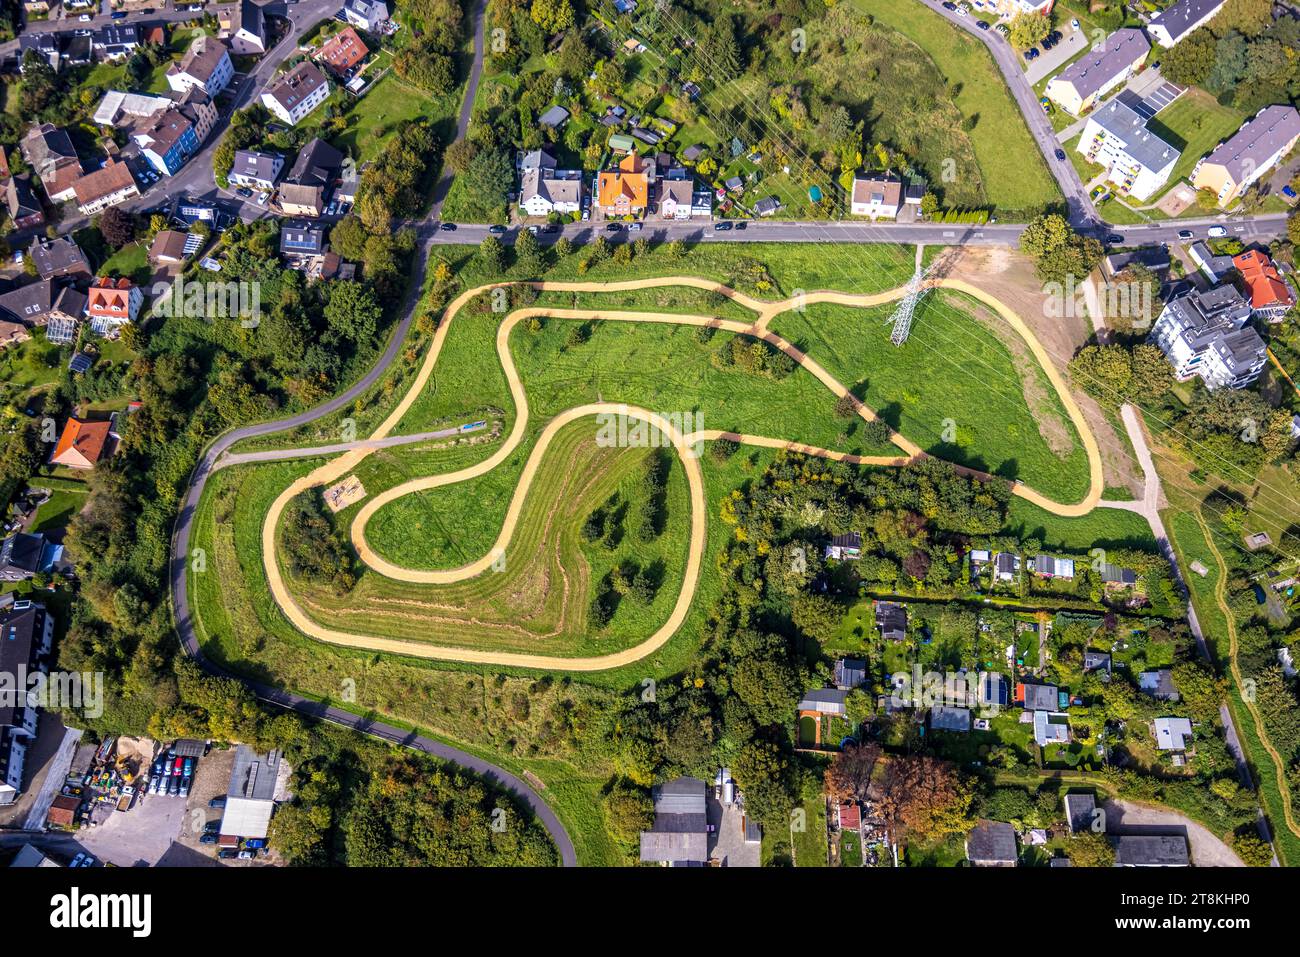 Vista aerea, parco divertimenti Finnbahn Tunnelpark, Berghofen, Dortmund, zona della Ruhr, Renania settentrionale-Vestfalia, Germania Foto Stock